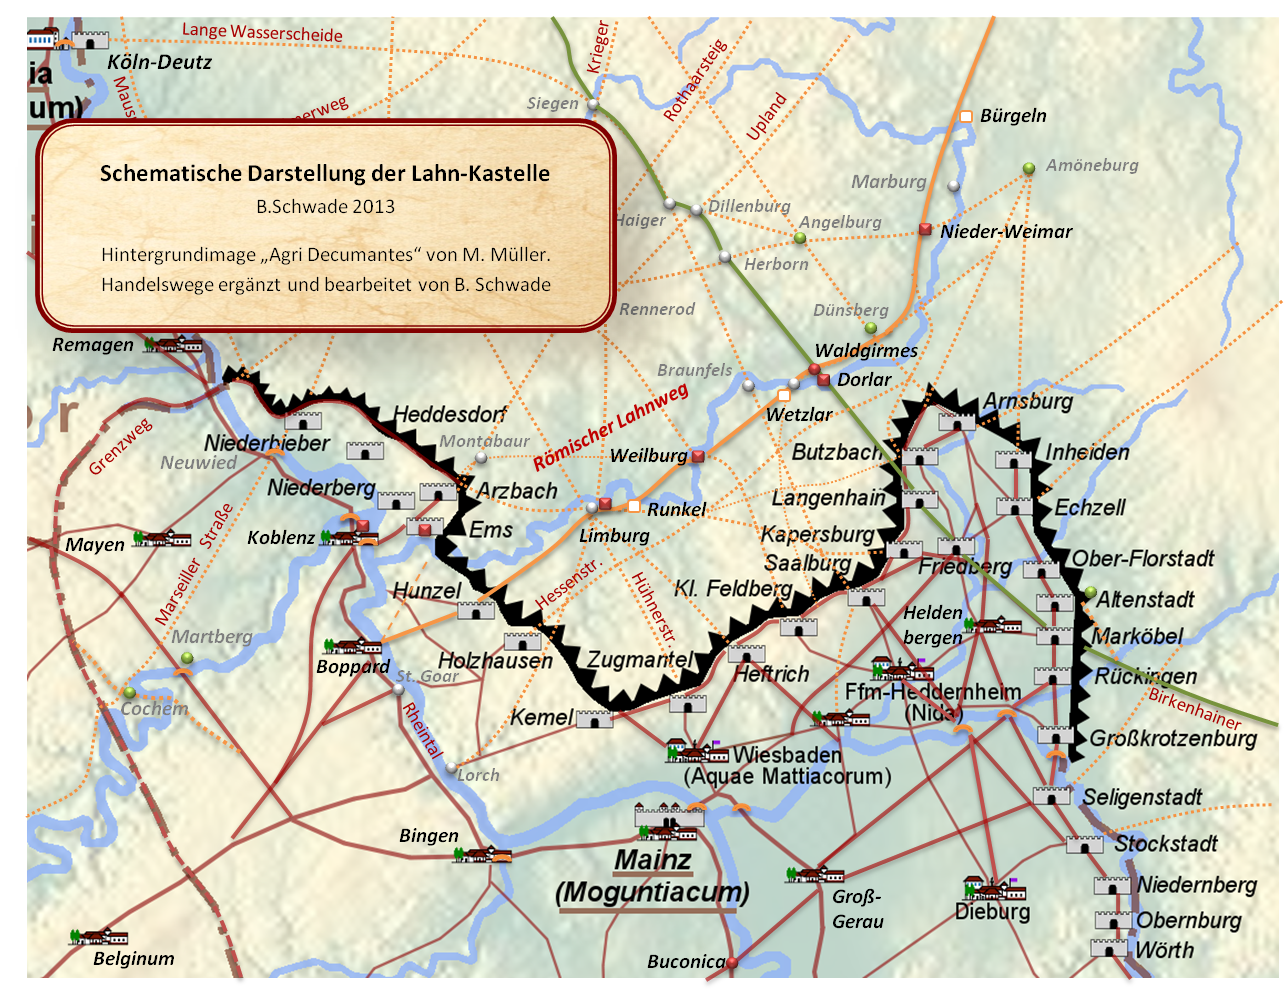 Der römische Lahnweg verband die Lahn-Kastelle in Boppard, Hunzel, Limburg, Weilburg, Dorlar und Nieder-Weimar und
		wurde in der Höhe des römischen Forums Waldgirmes von einem wichtigen vorrömischen Fernweg, der die Donau mit dem Rhein verband, gekreuzt.